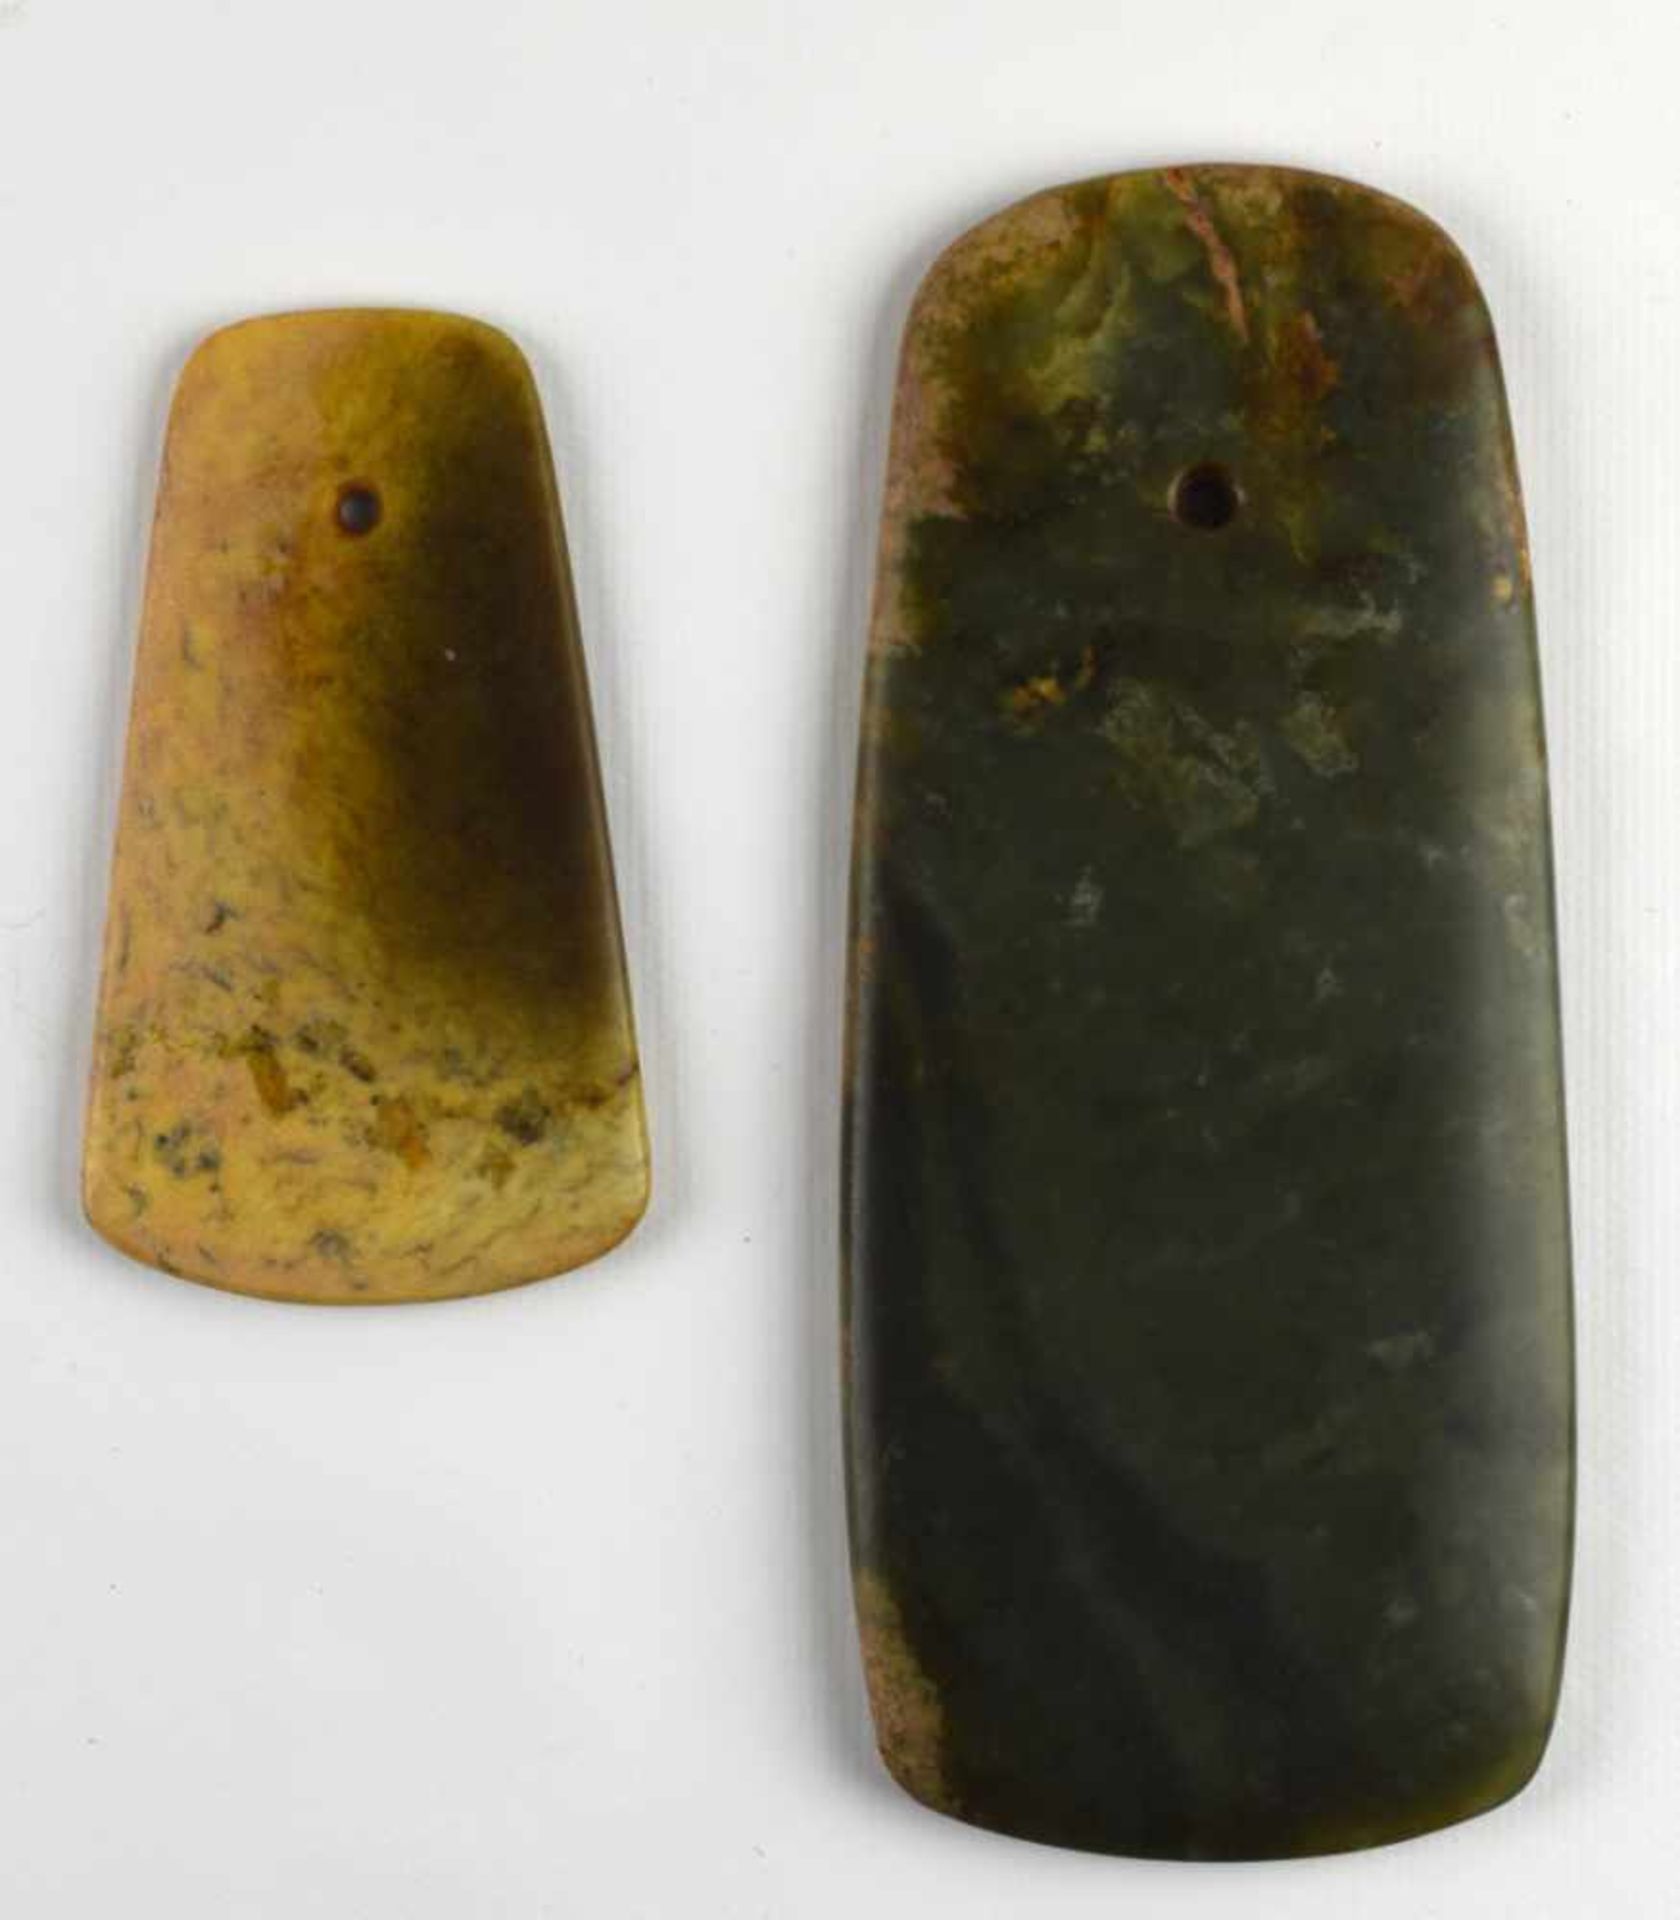 China - Two nephrite hatchets Chine - Deux haches en néphrite De teinte vert foncé et ocre. 9 x 11 - Image 2 of 2